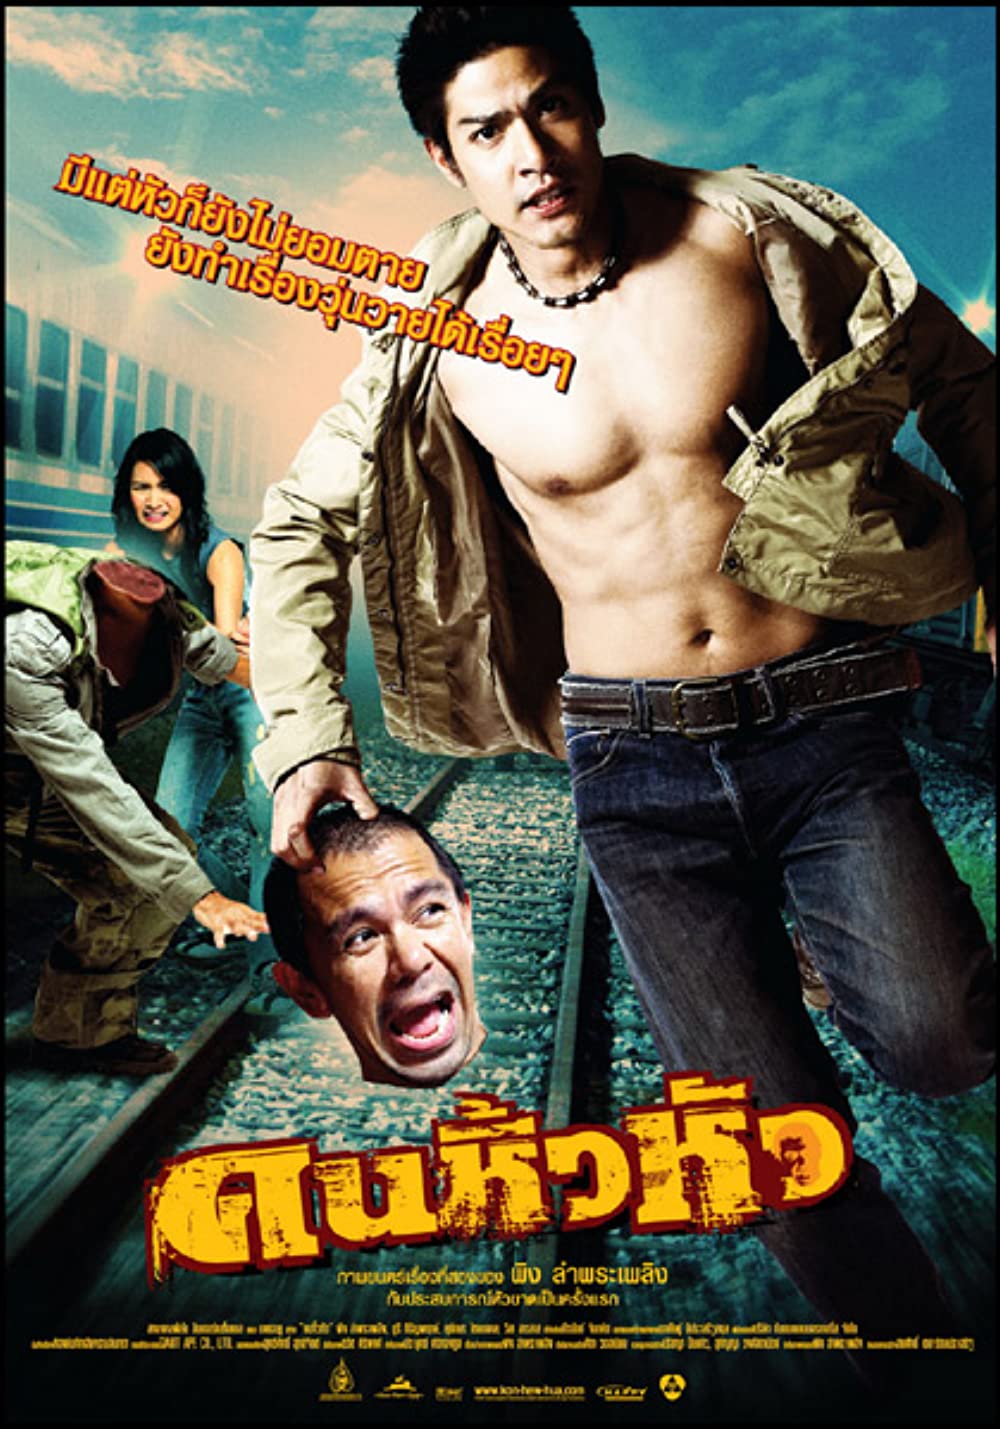 ดูหนังออนไลน์ฟรี Khon hew hua (2007) คนหิ้วหัว